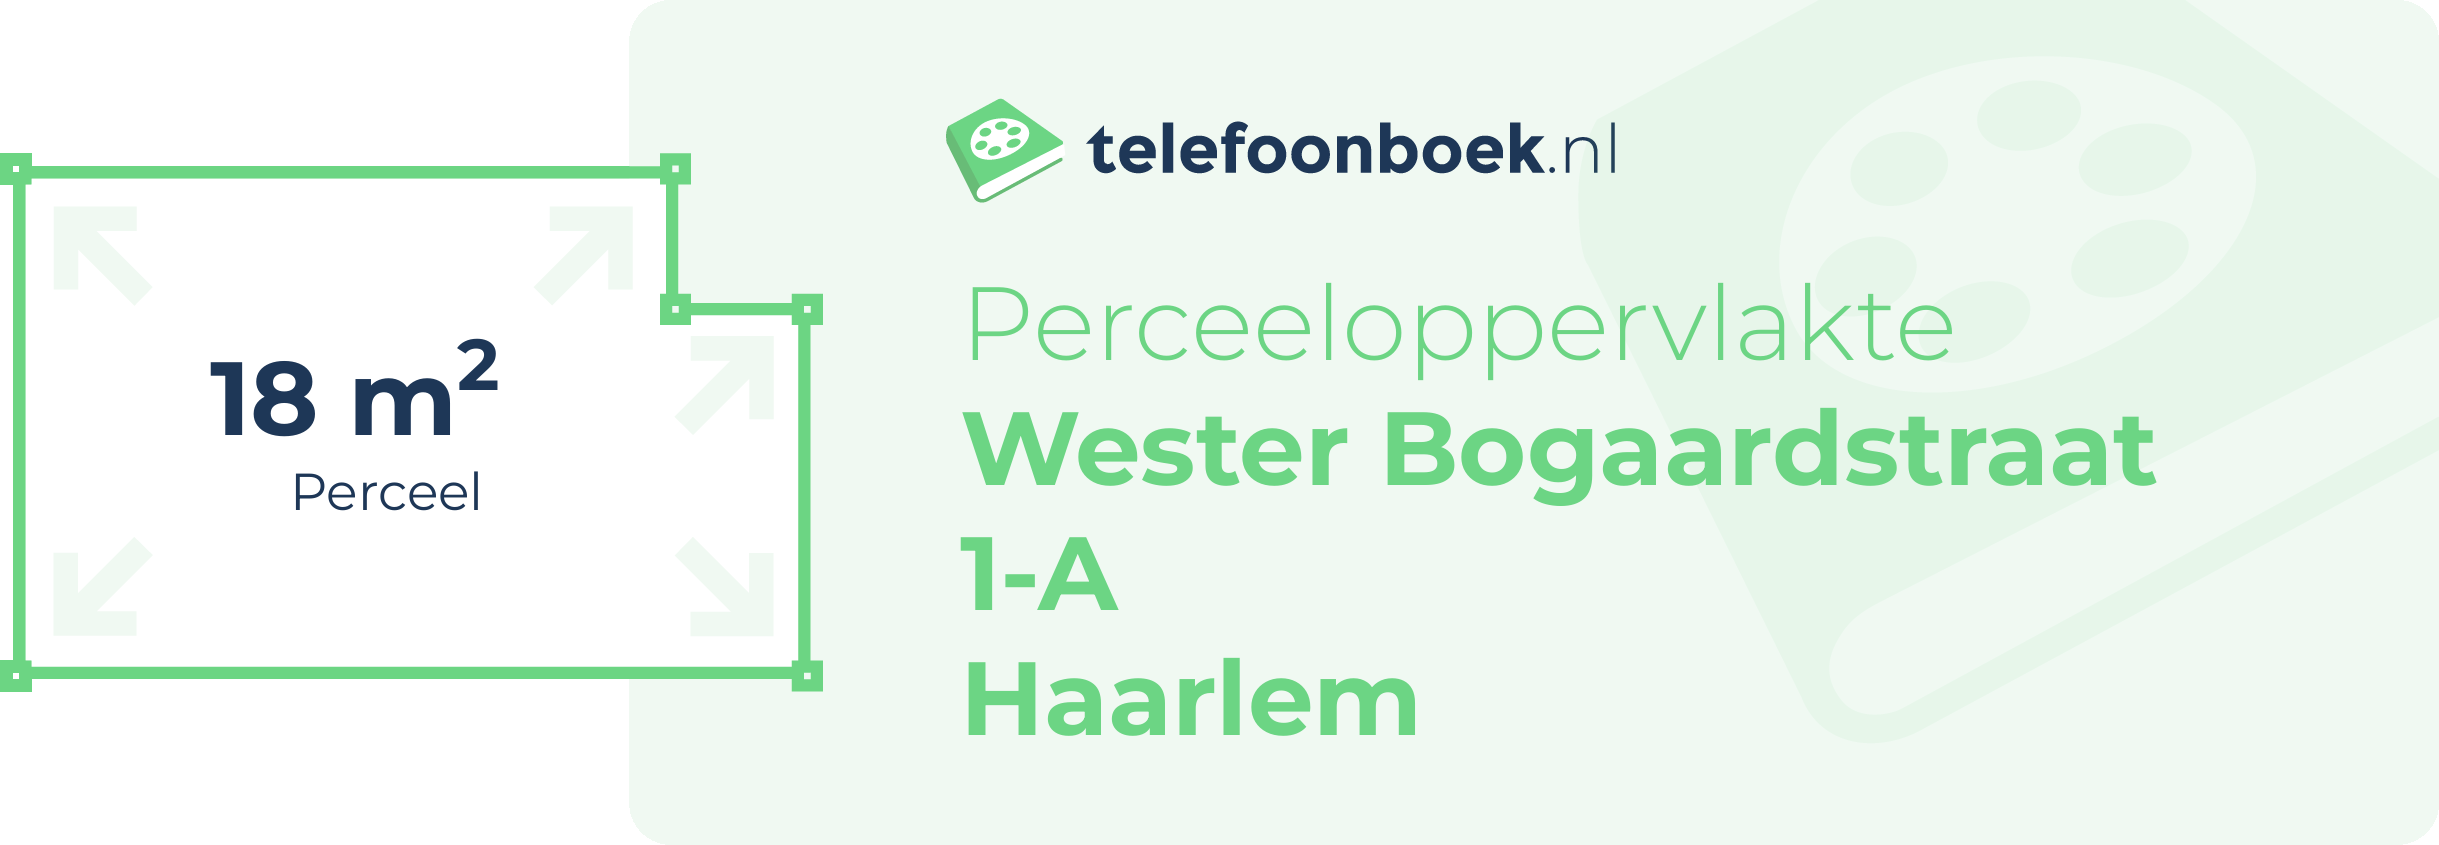 Perceeloppervlakte Wester Bogaardstraat 1-A Haarlem